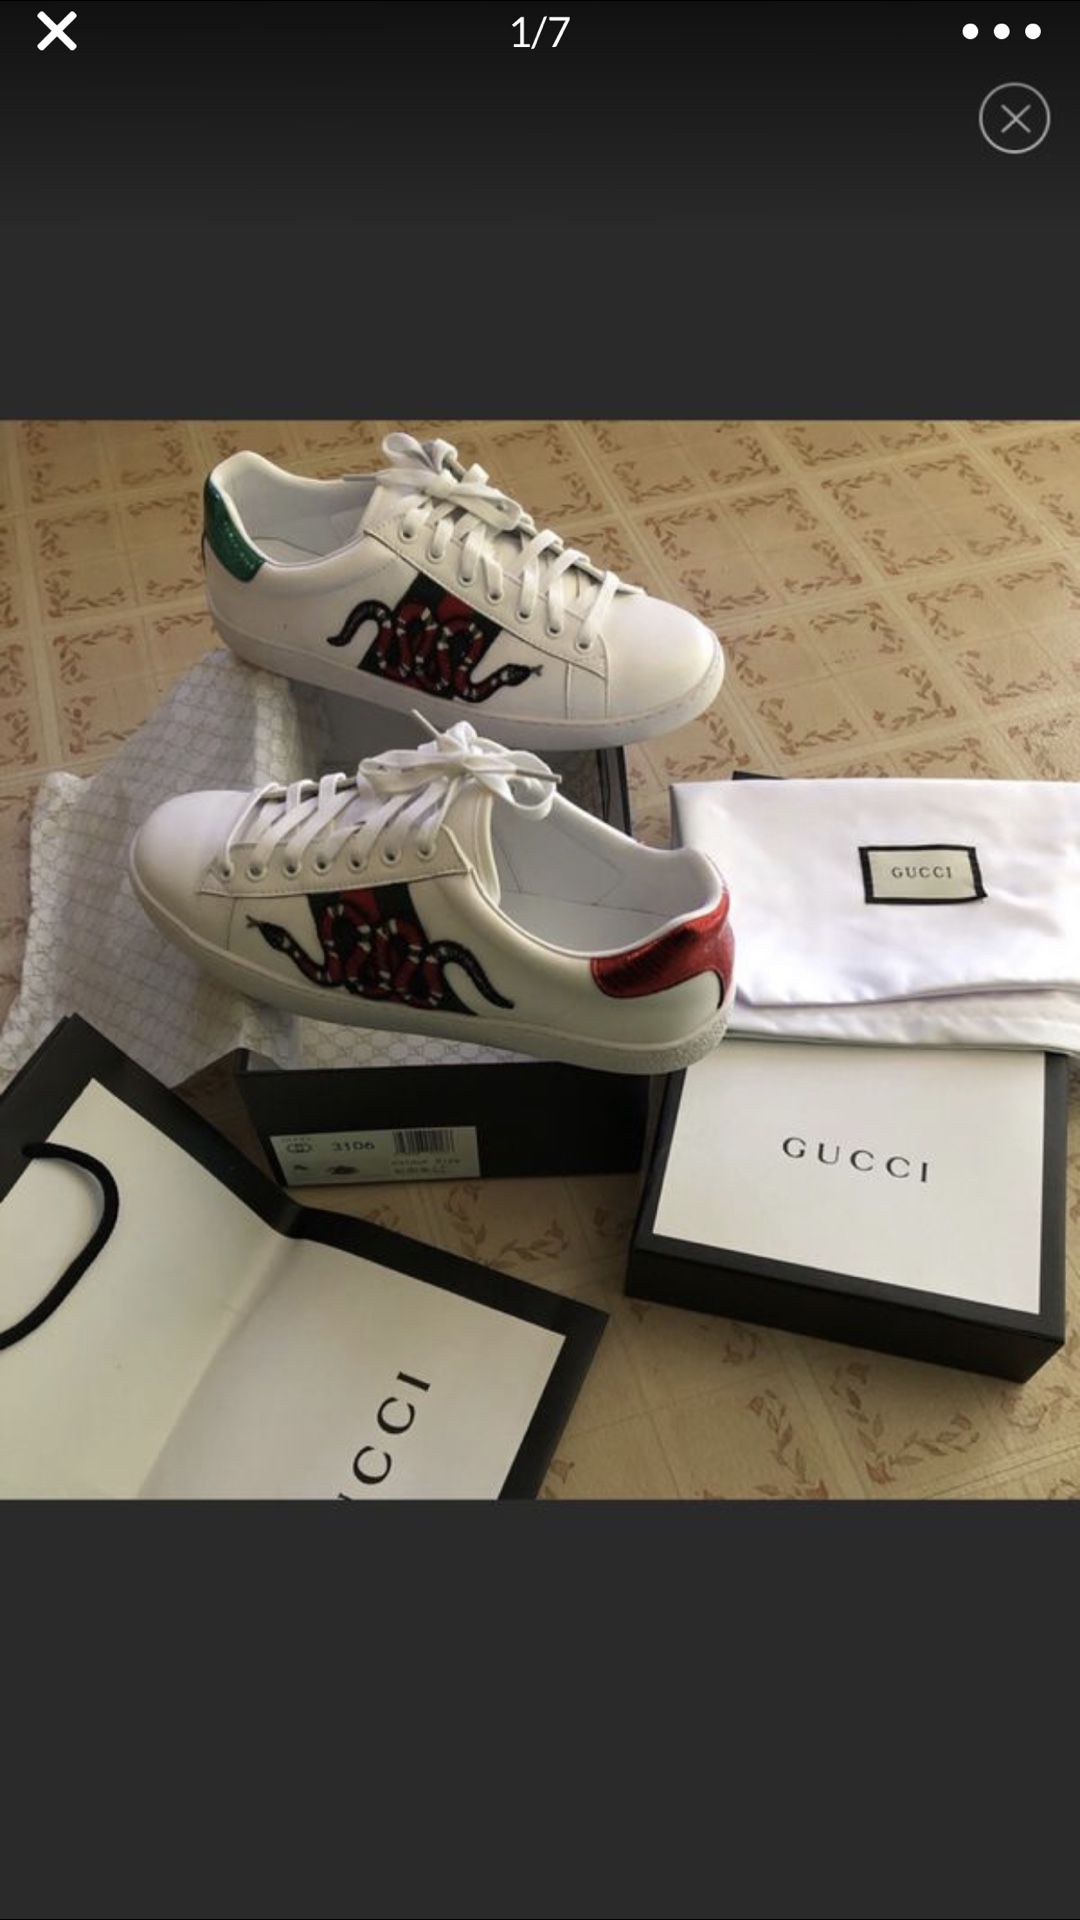 Gucci Ace’s